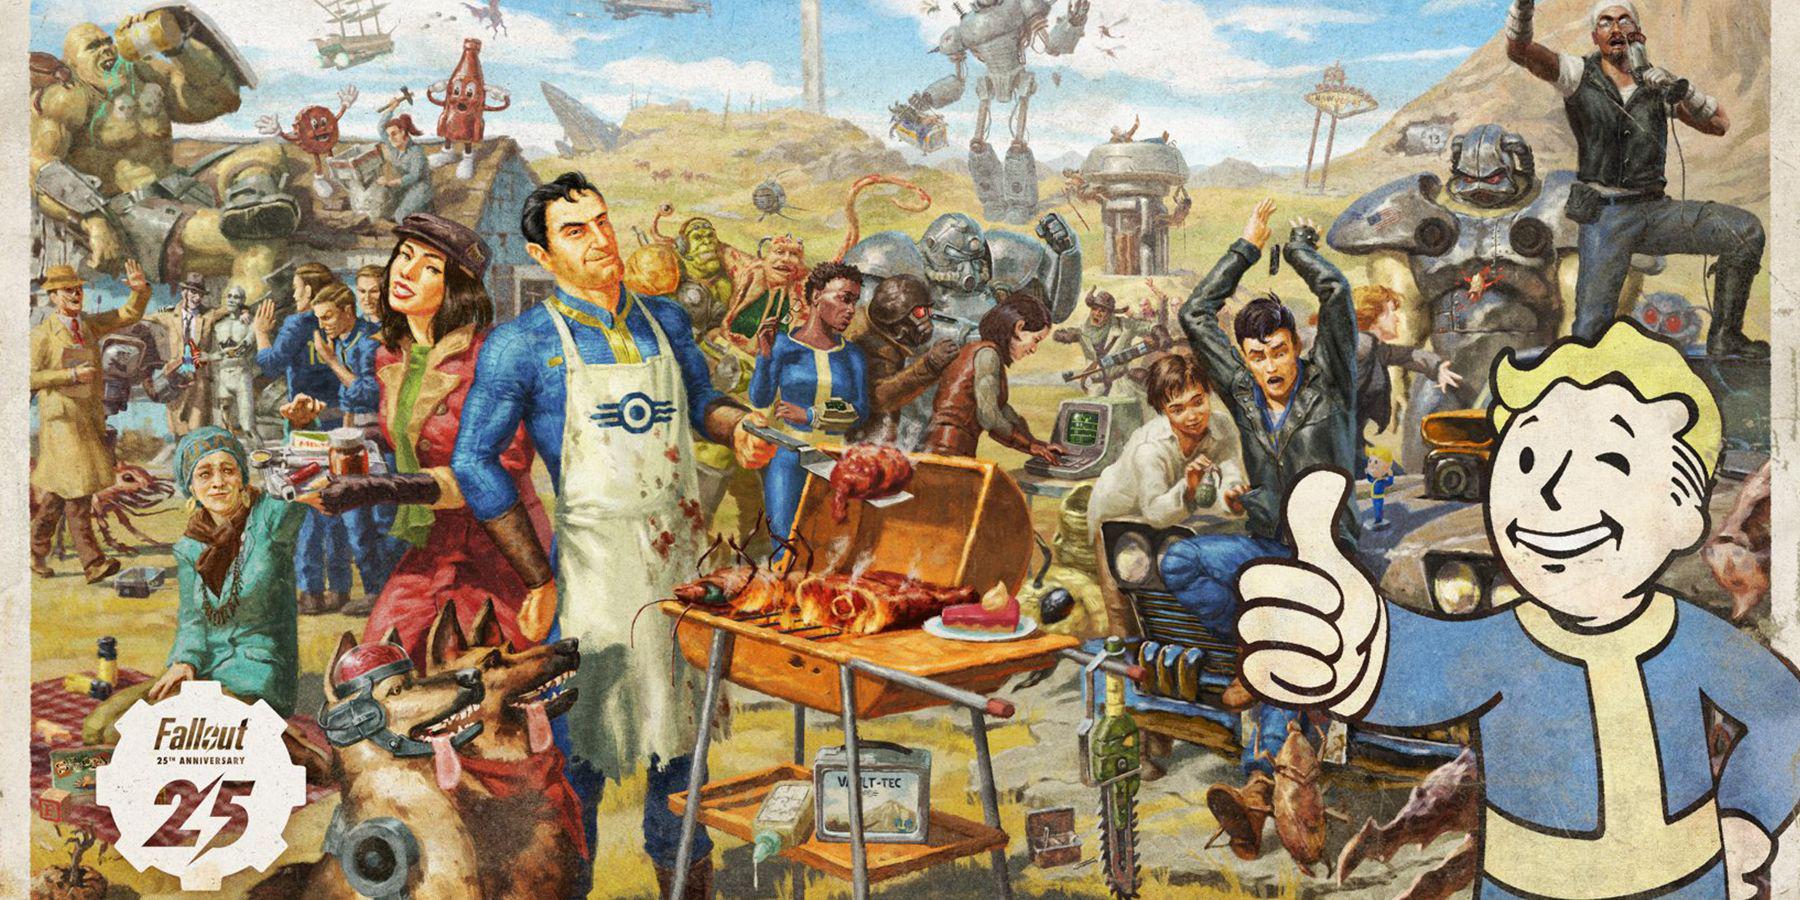 5 coisas que a próxima série Fallout pode aprender com as adaptações anteriores de videogames